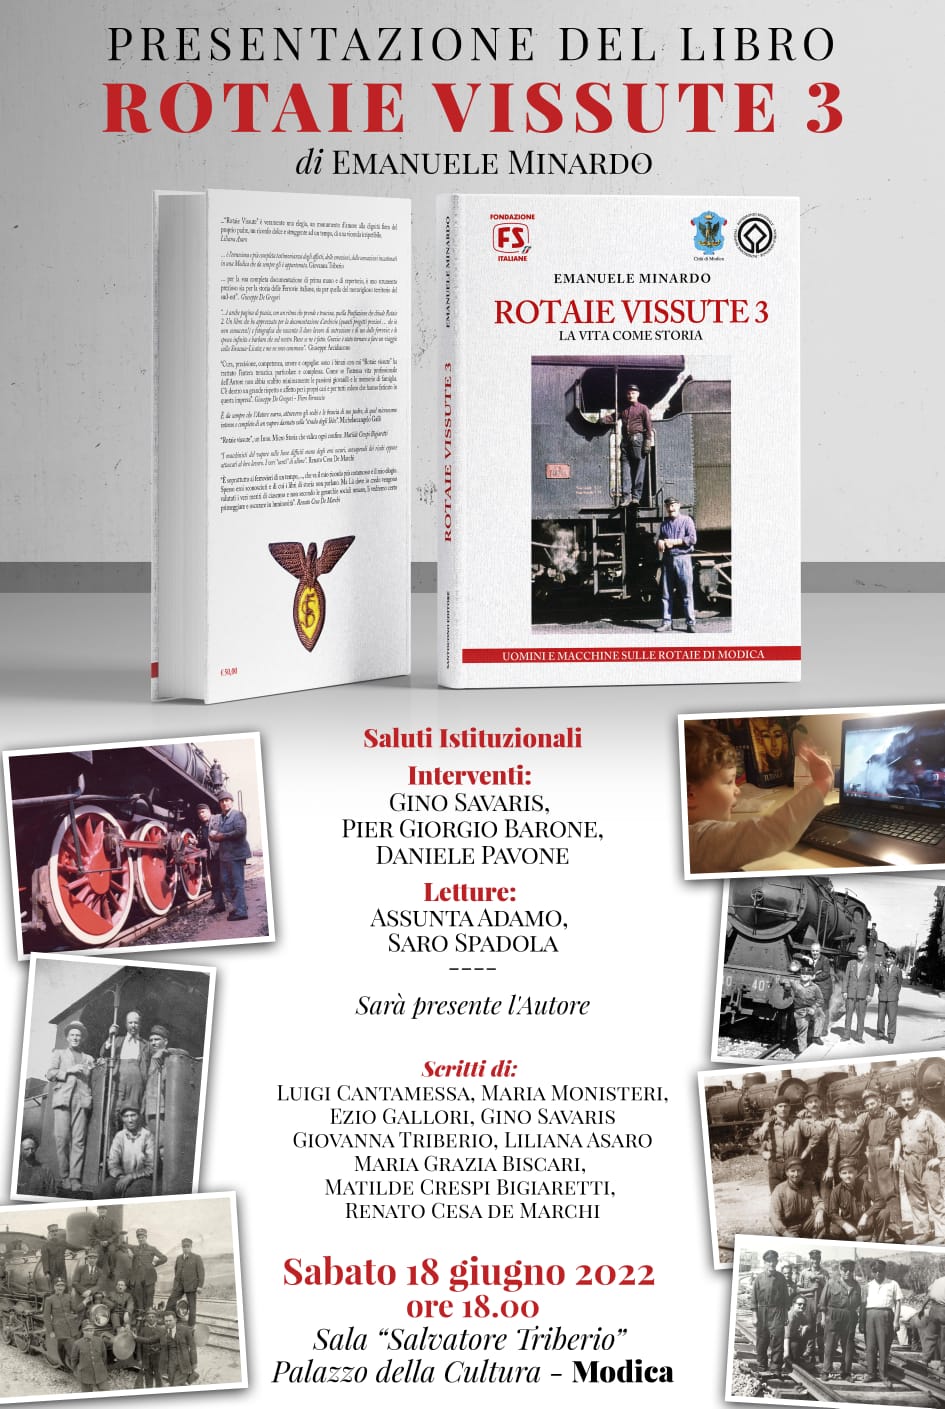 Modica, al Palazzo della Cultura si presenta il libro di Emanuele Minardo "Rotaie vissute 3"